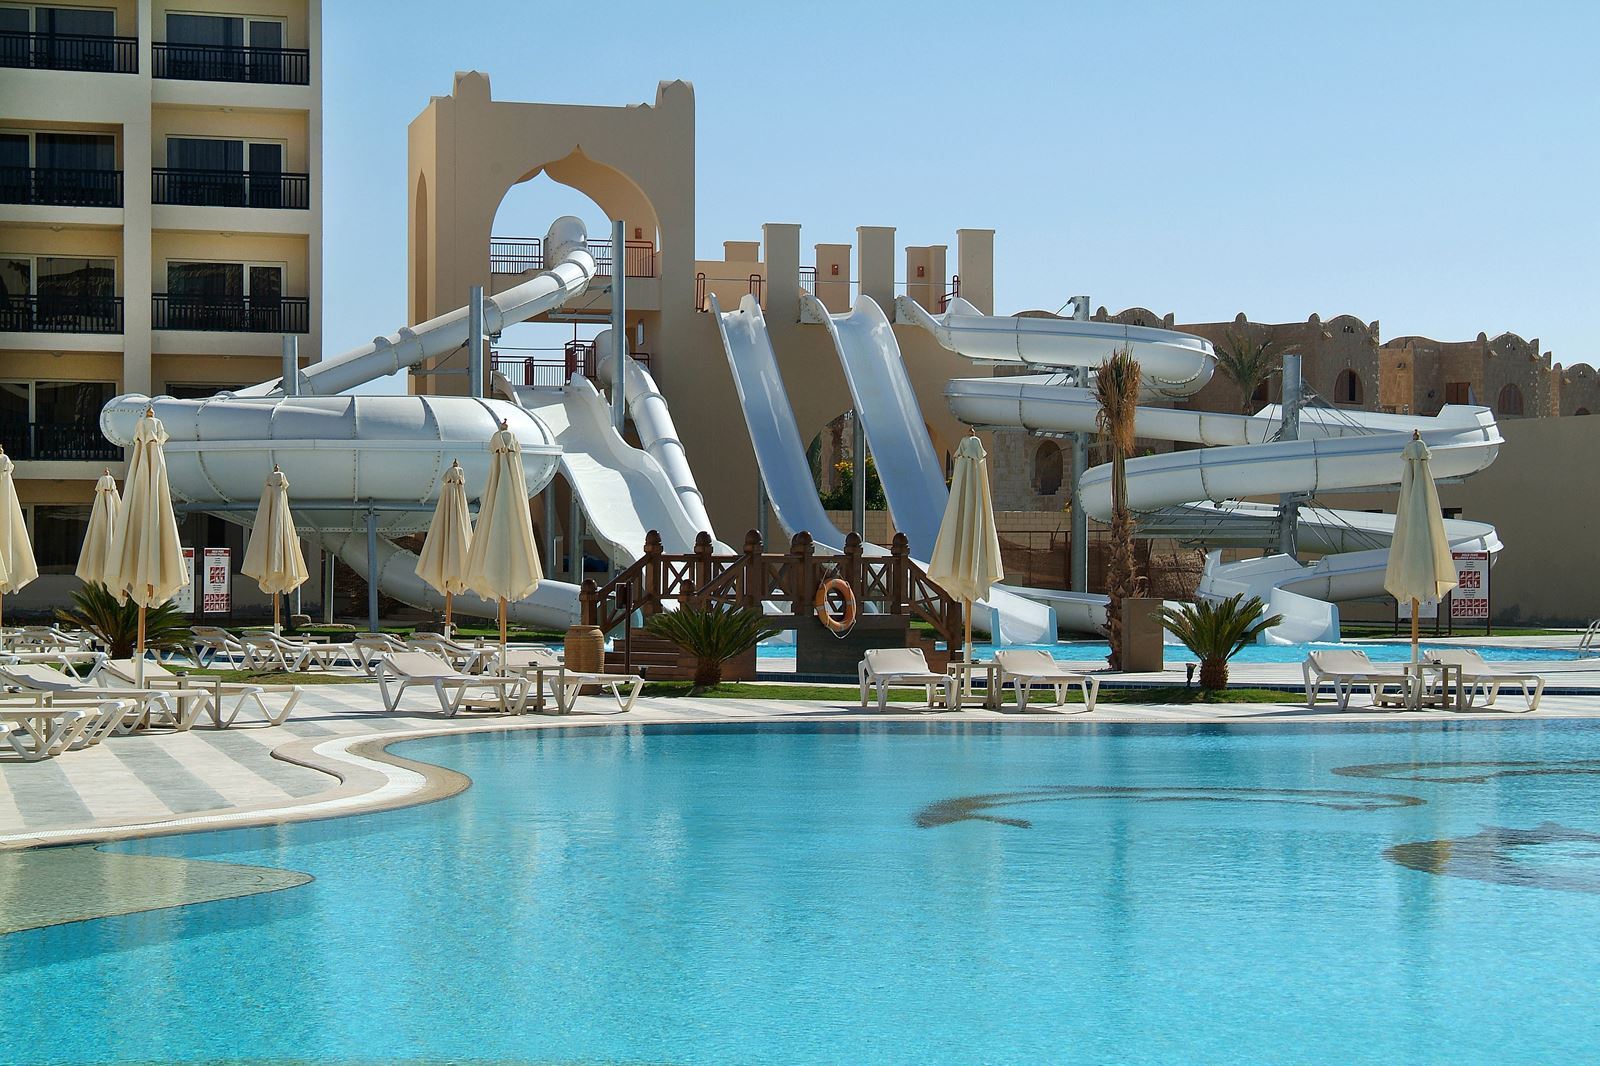 Het zwembad van Hotel Steigenberger in Hurghada